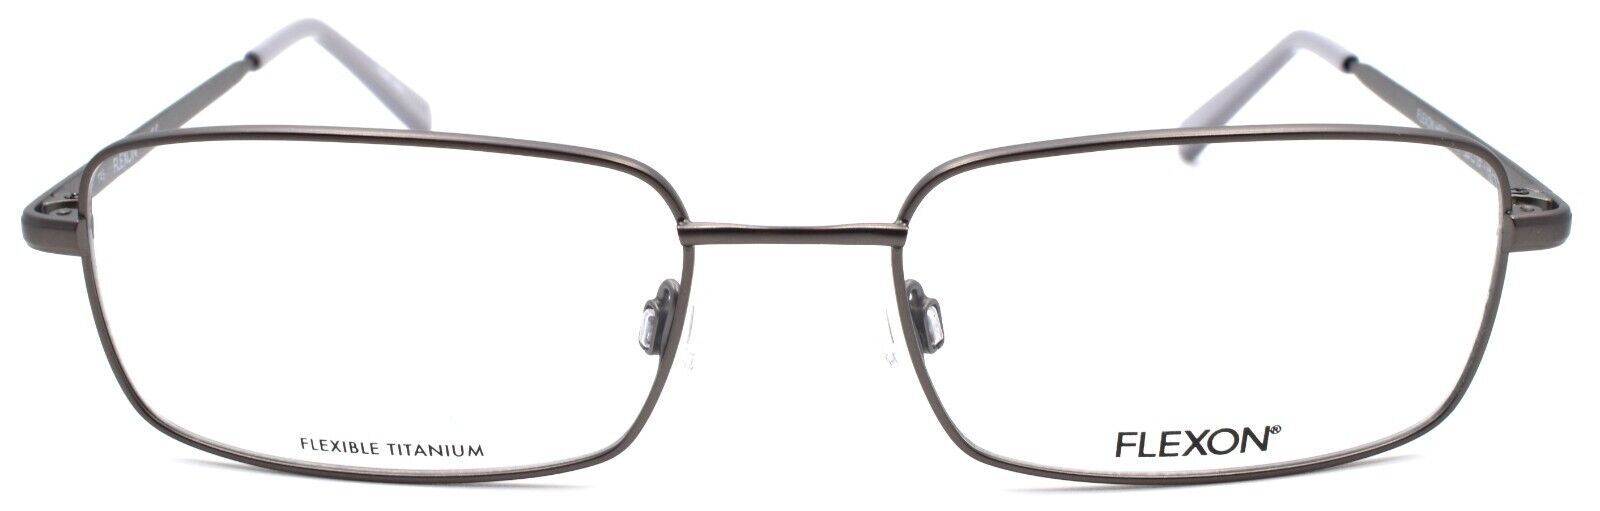 2-Flexon H6051 033 Men's Eyeglasses Frames 55-18-145 Gunmetal Flexible Titanium-886895485586-IKSpecs